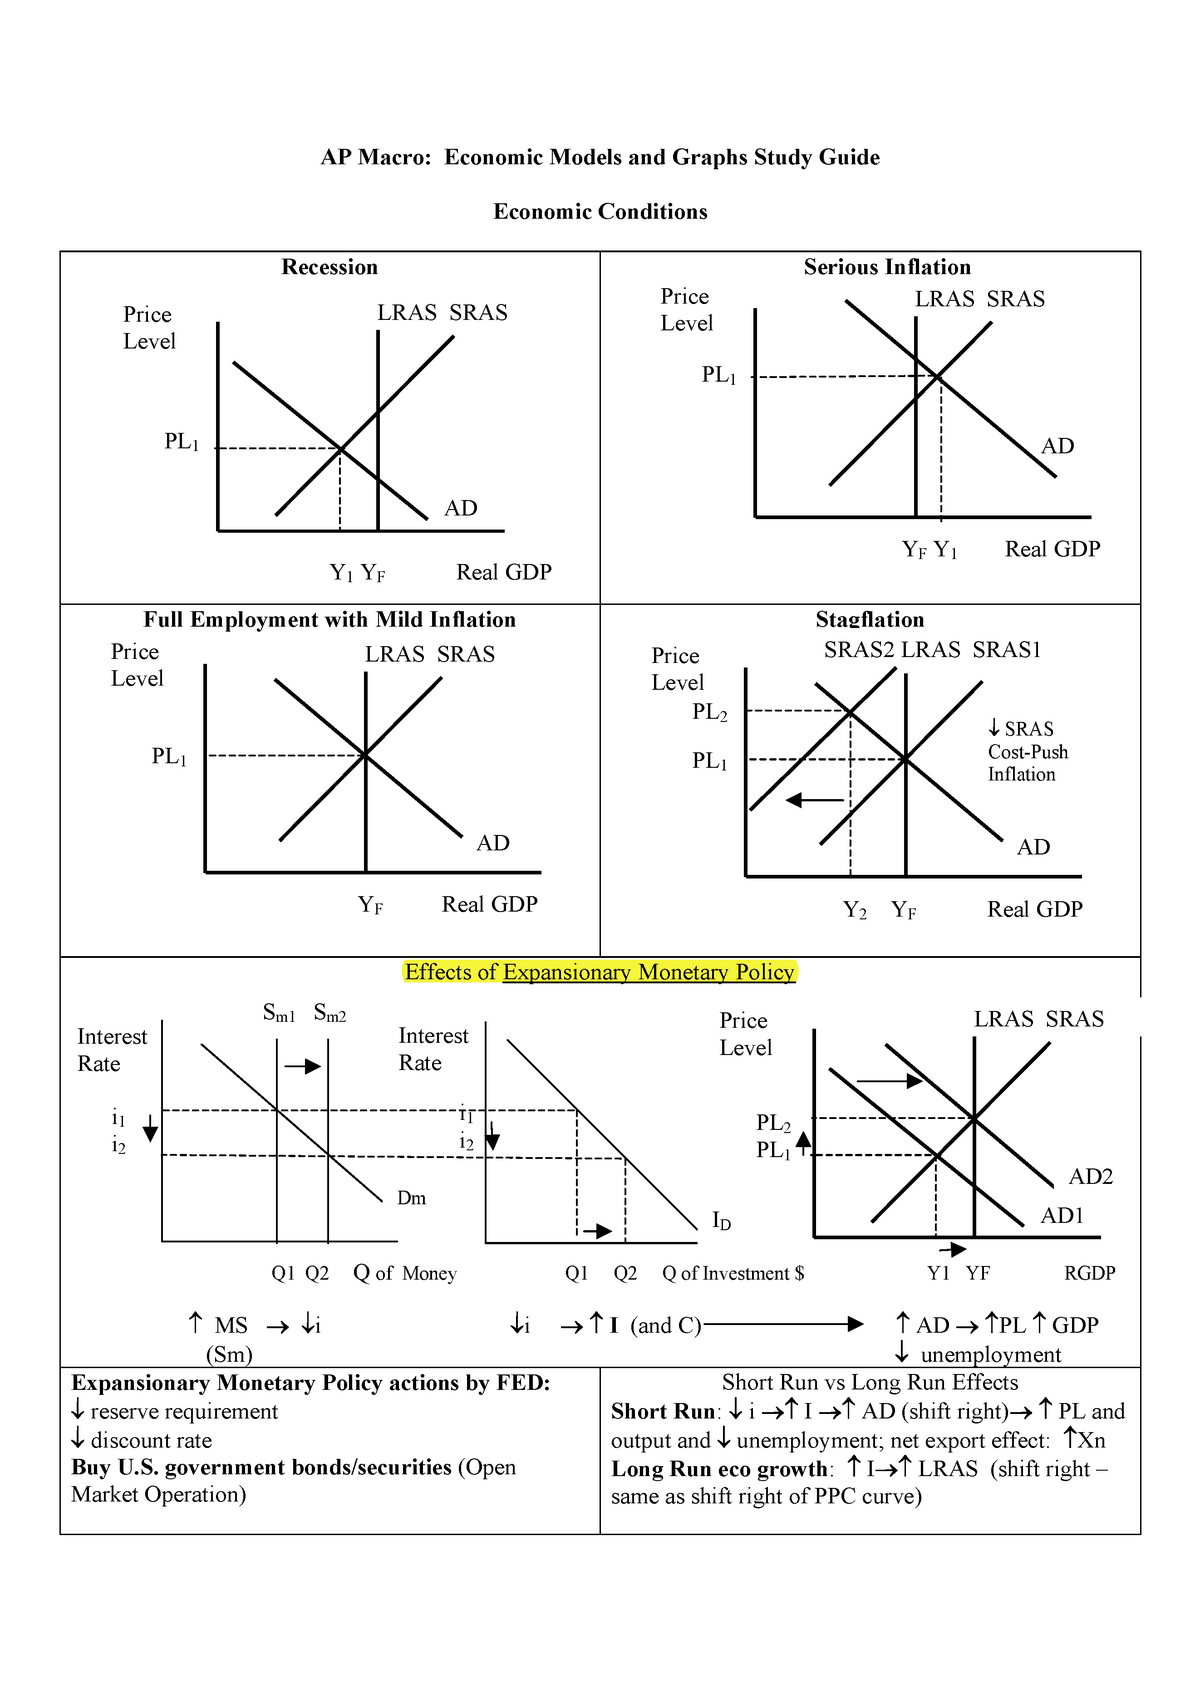 AP Macro Cheat Sheet AP Macro Economic Models and Graphs Study Guide